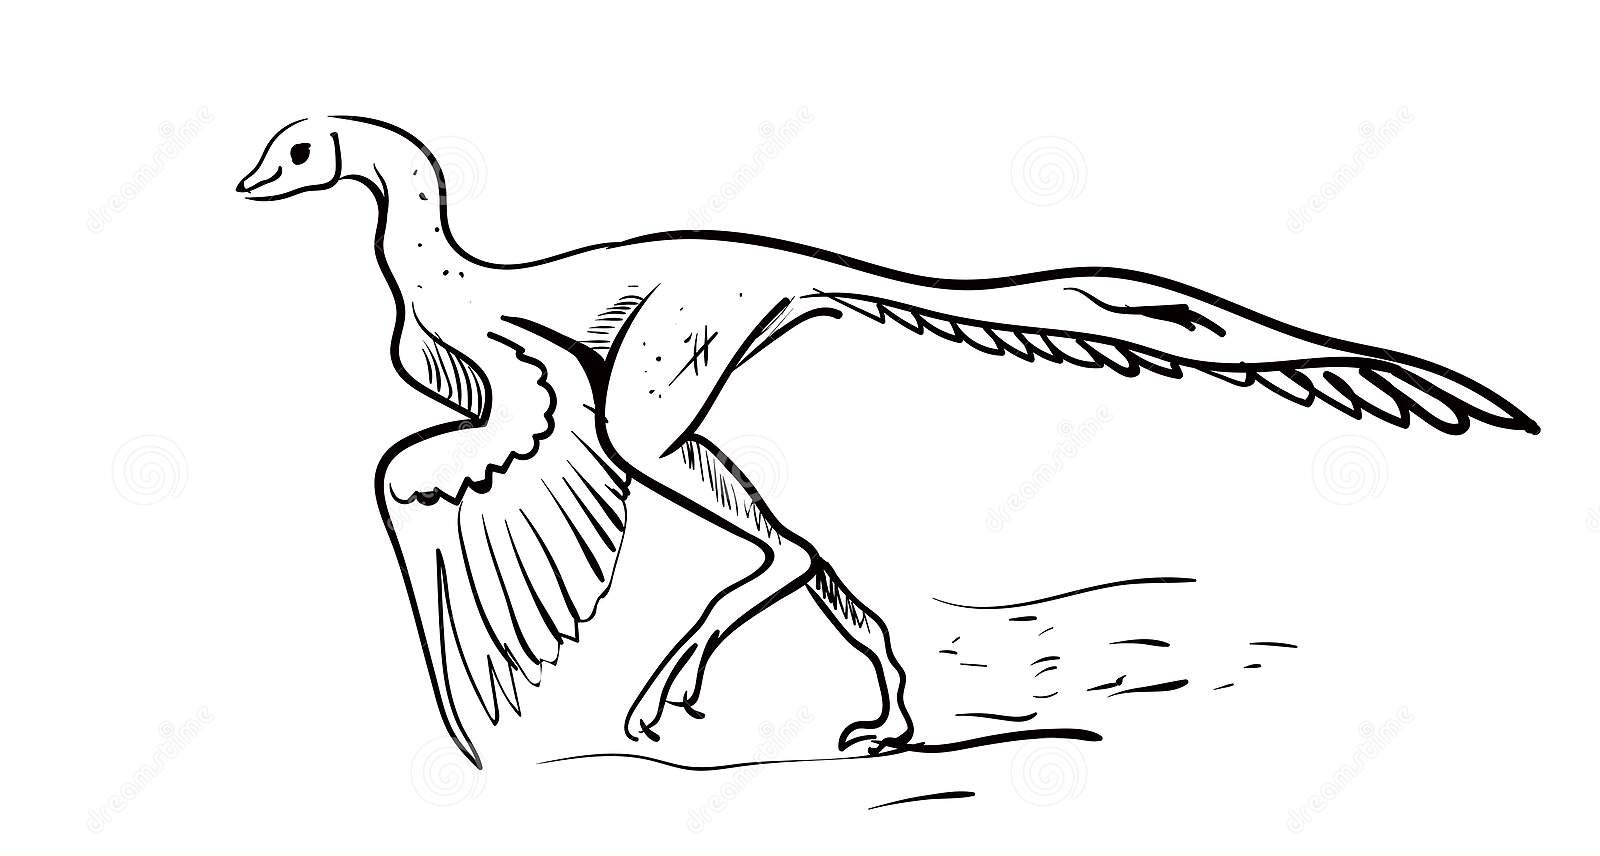 Archaeopteryx illustratore vettoriale sfondo bianco da Archaeopteryx